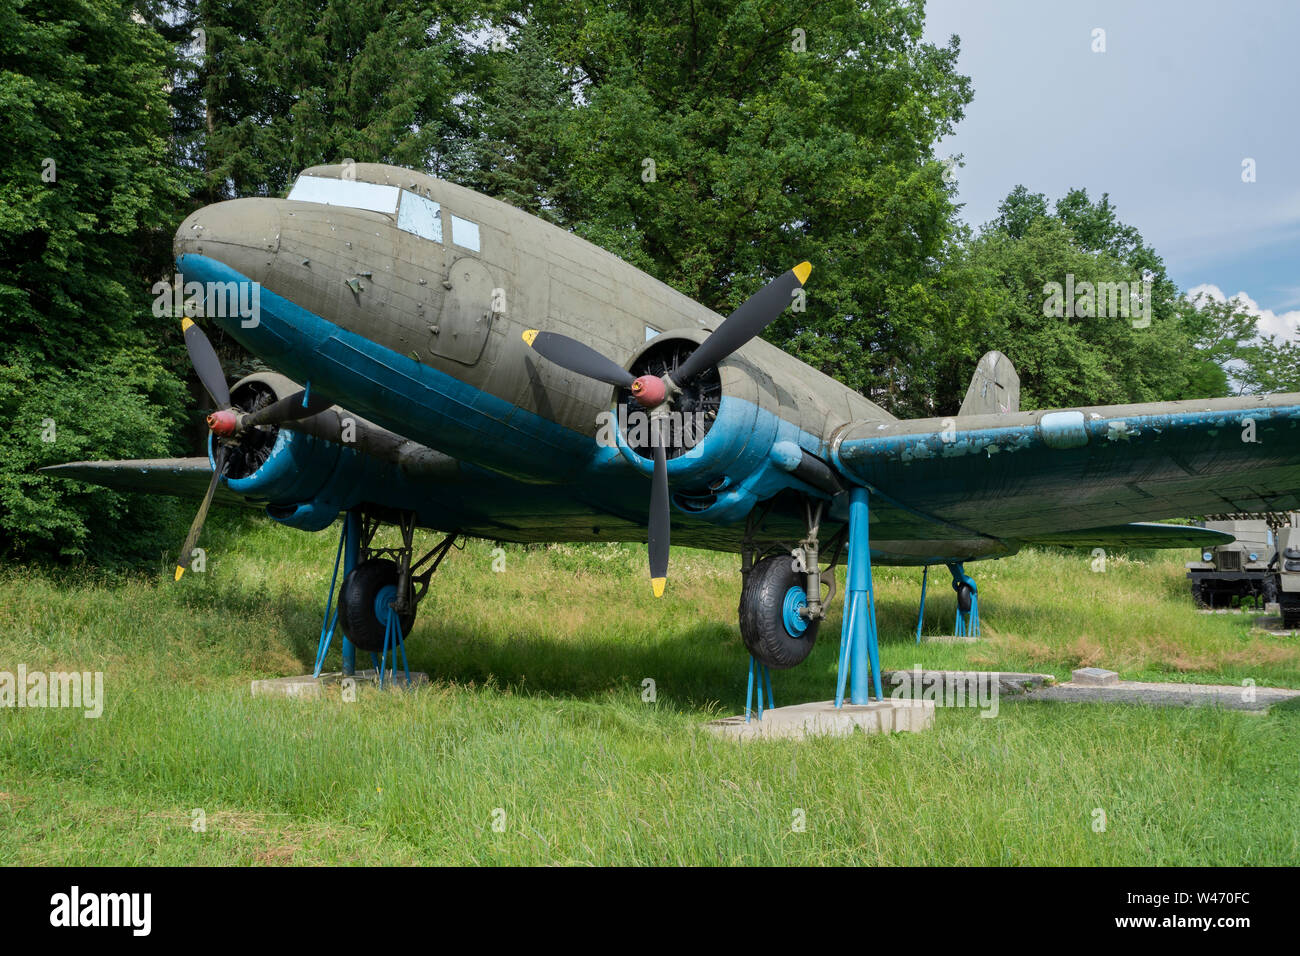 Musée militaire et historique en plein air à Svidnik - Lisunov Li-2 (version russe du Dakota américain DC-3/C-47). Slovaquie, Europe Banque D'Images